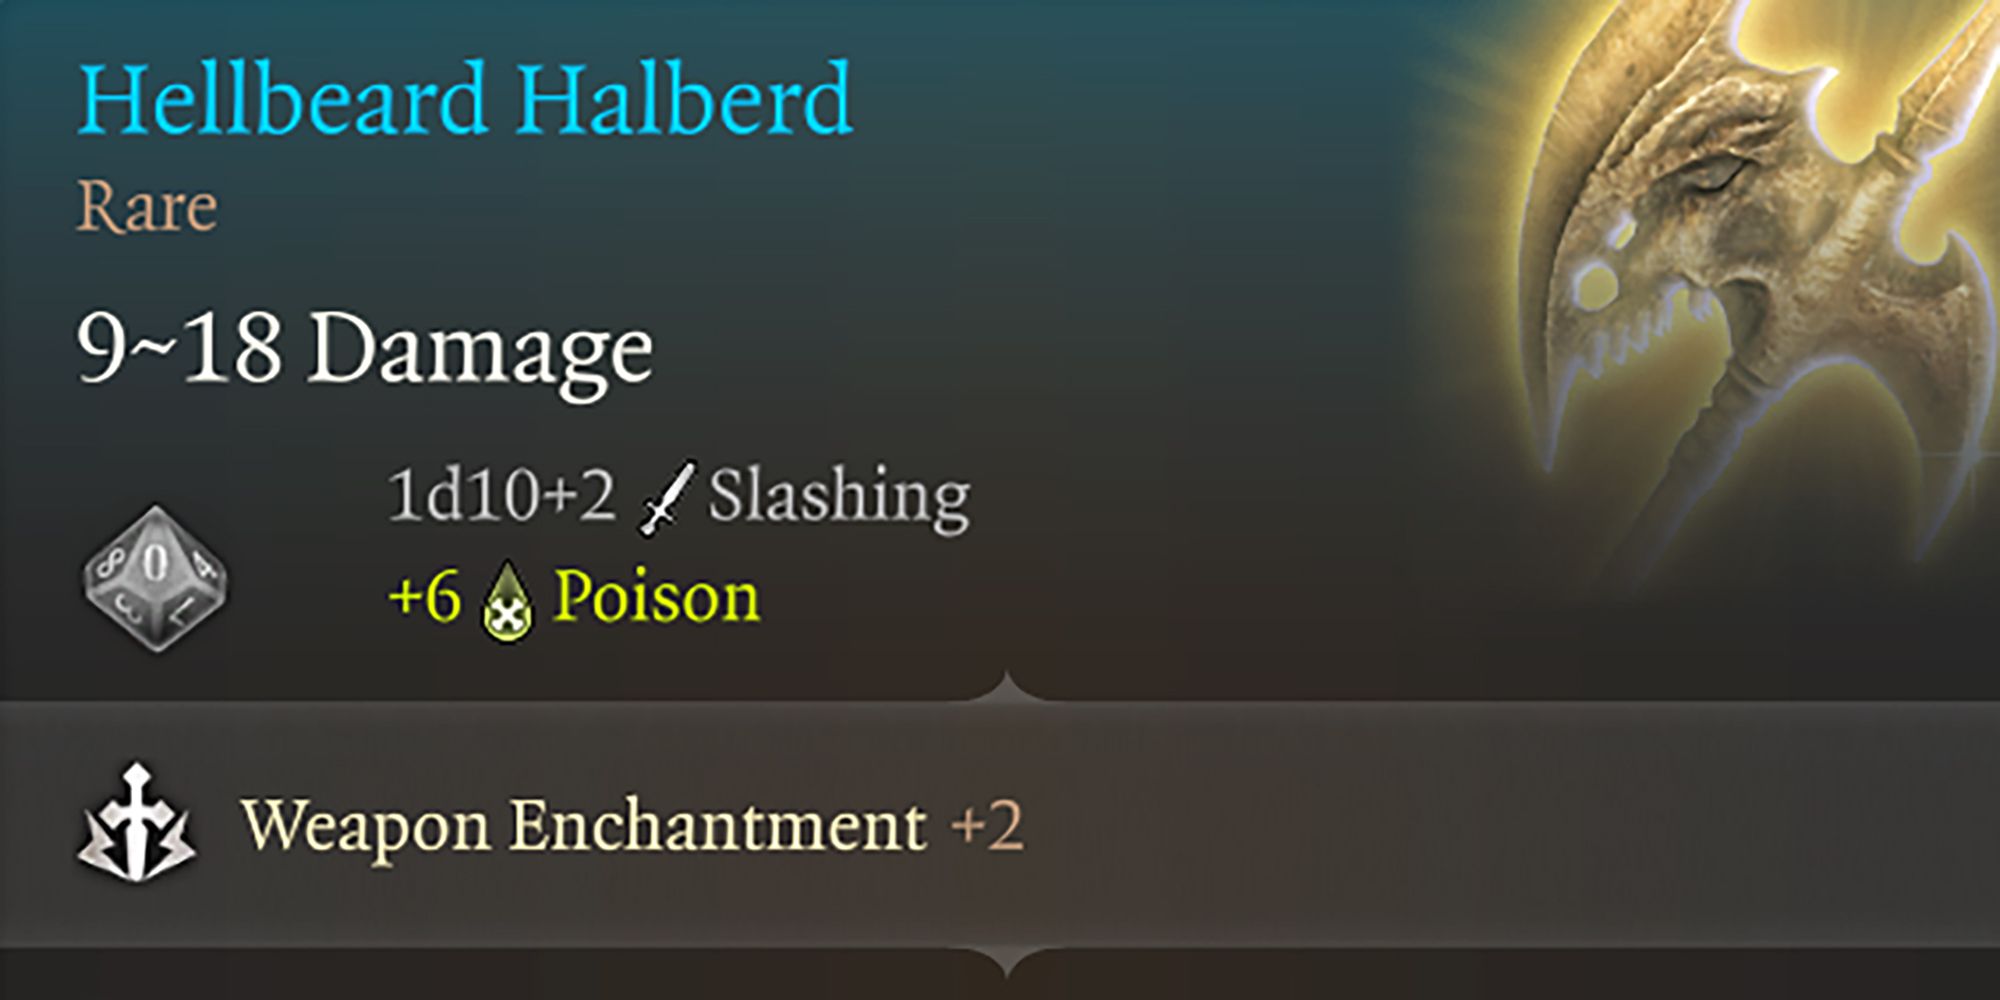 Baldurs Gate 3 Hellbeard Halberd Update